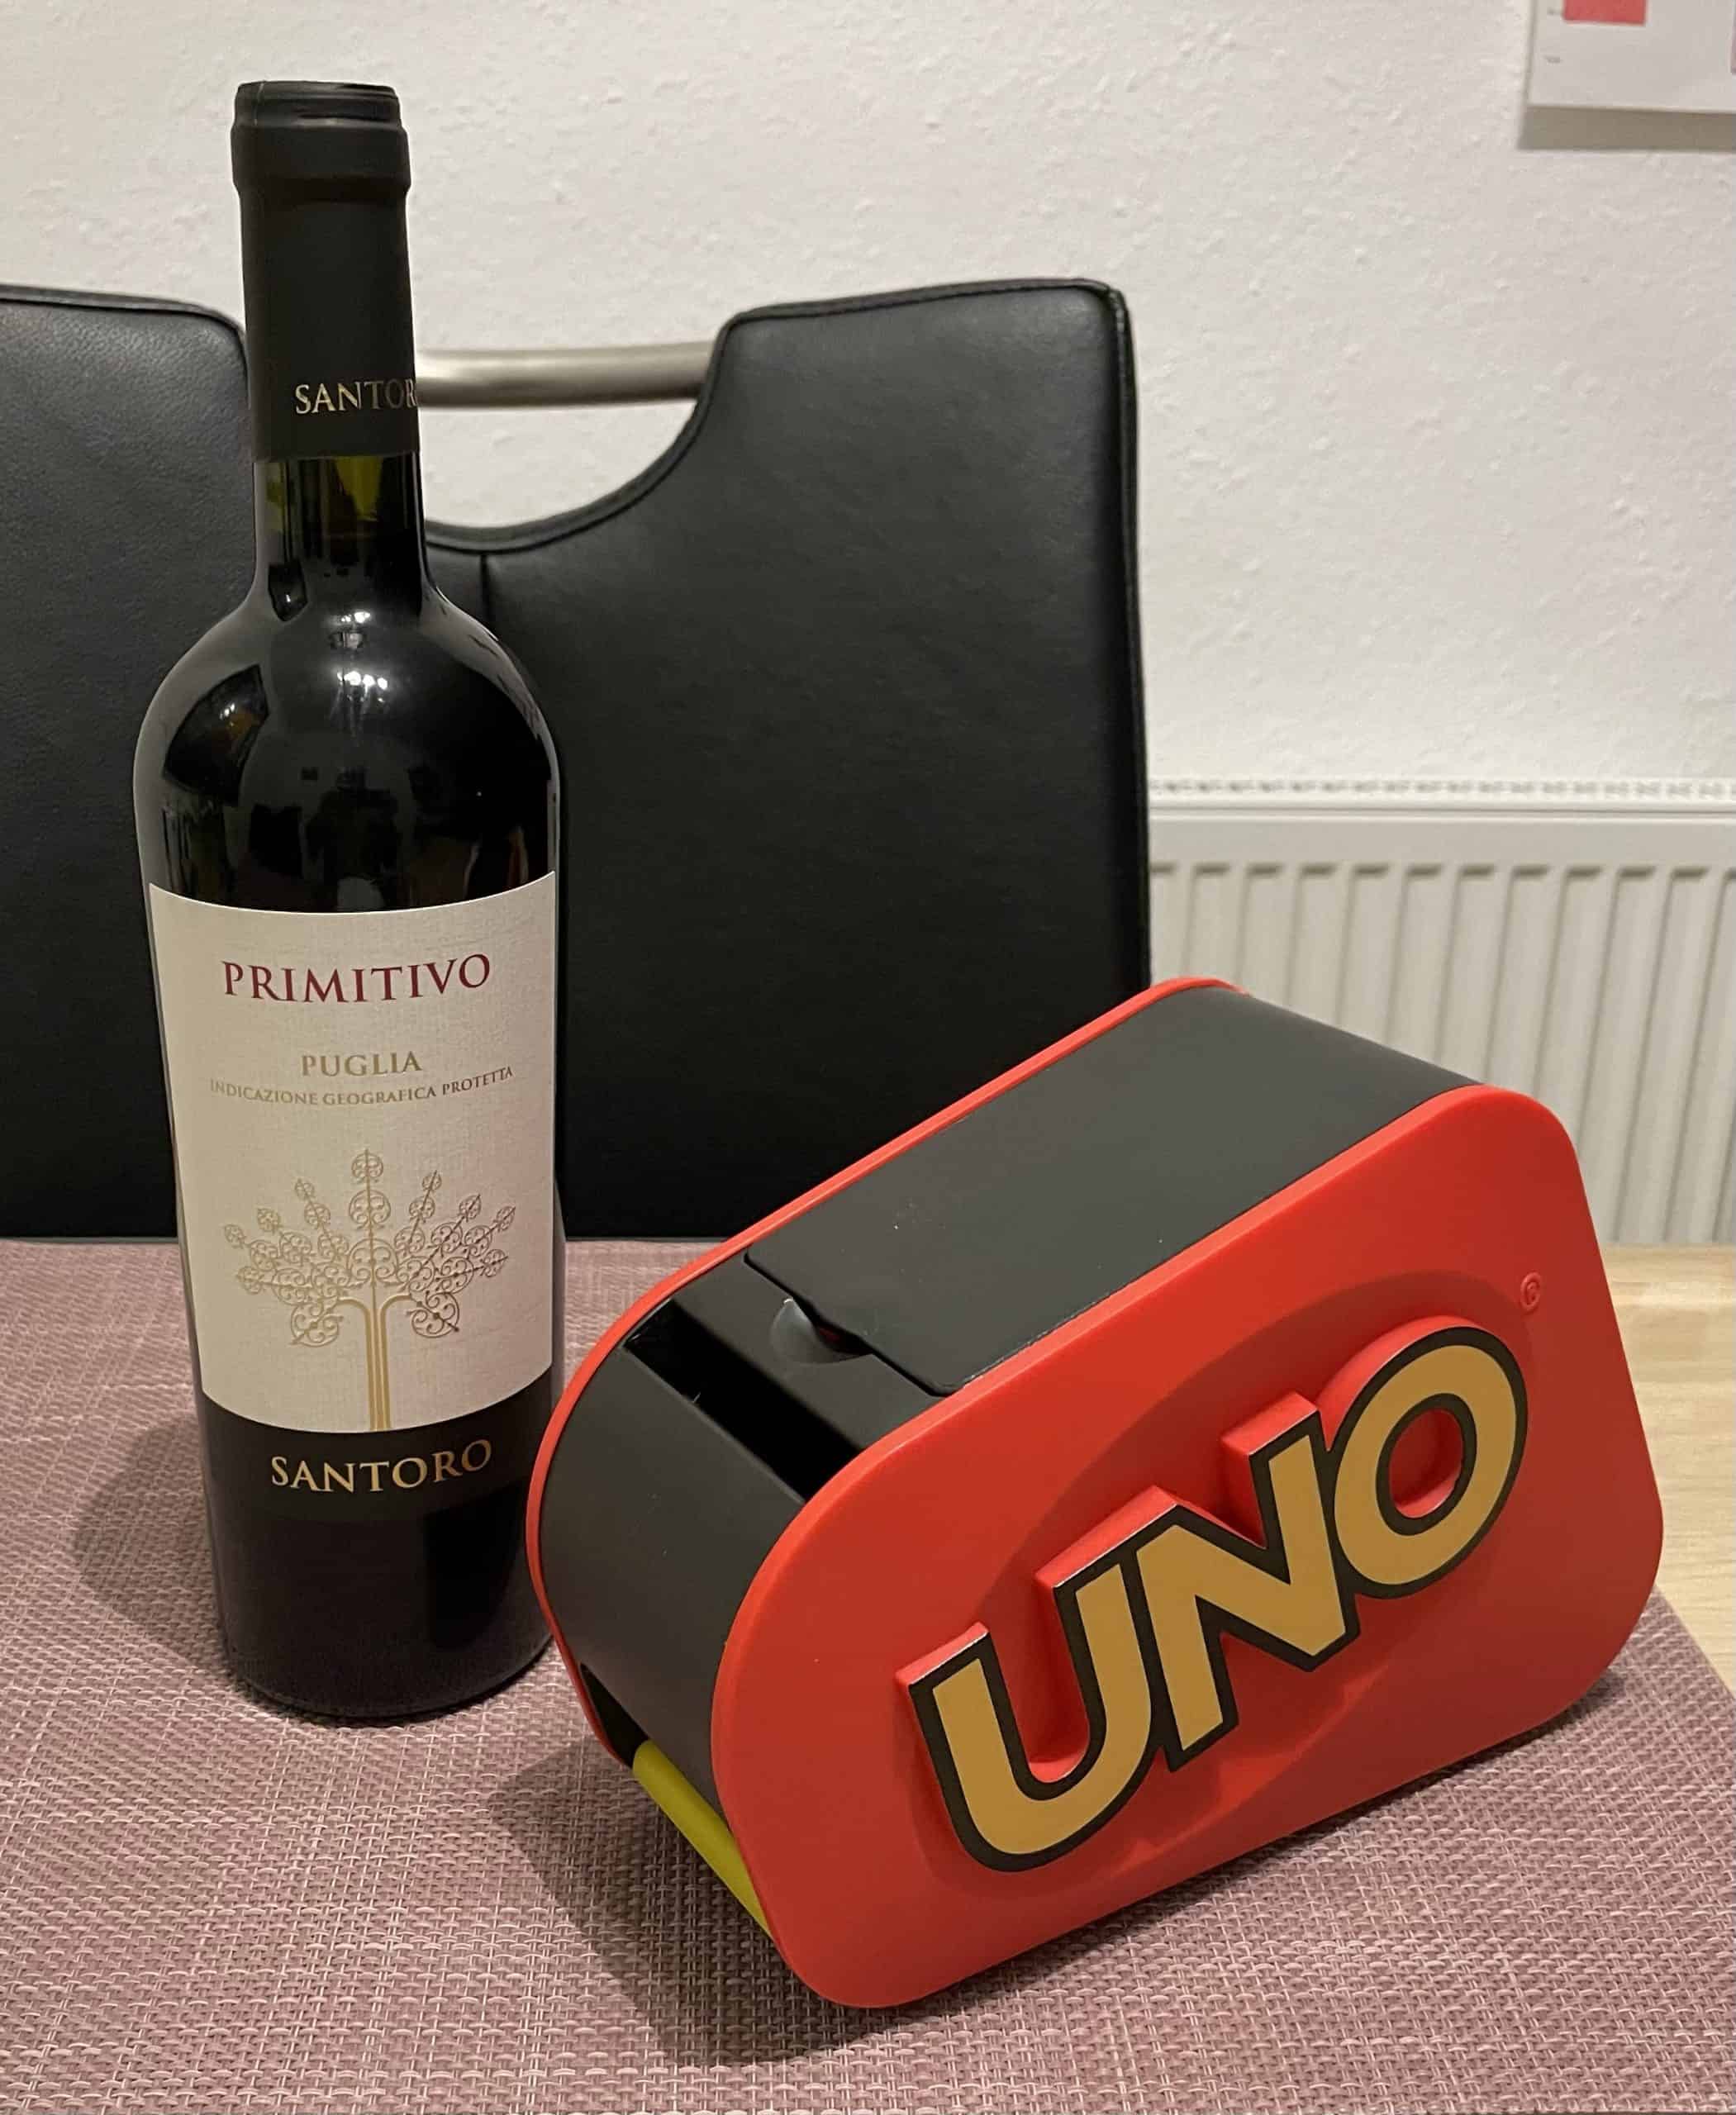 Stilleben mit Uno Extrem und einer flasche Rotwein